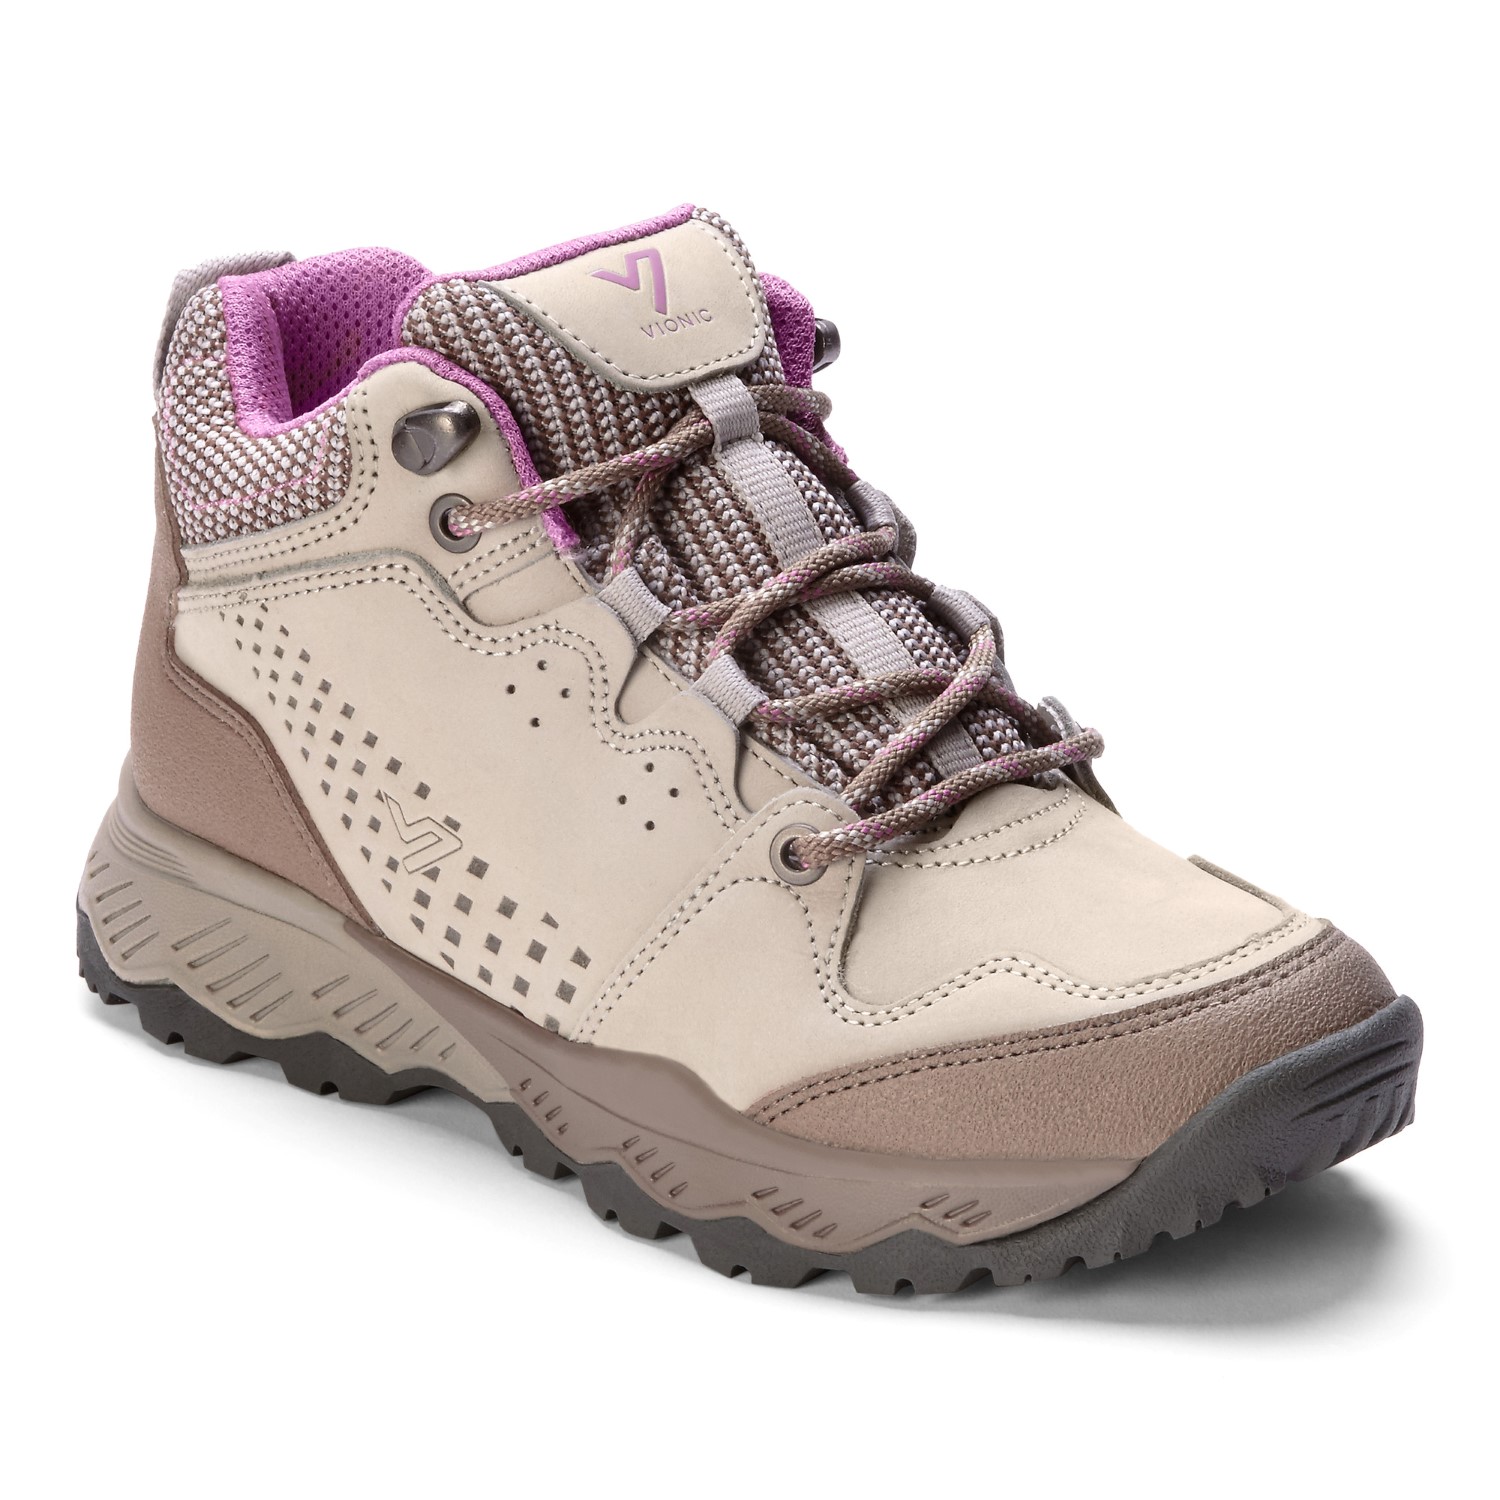 vionic hiking boots